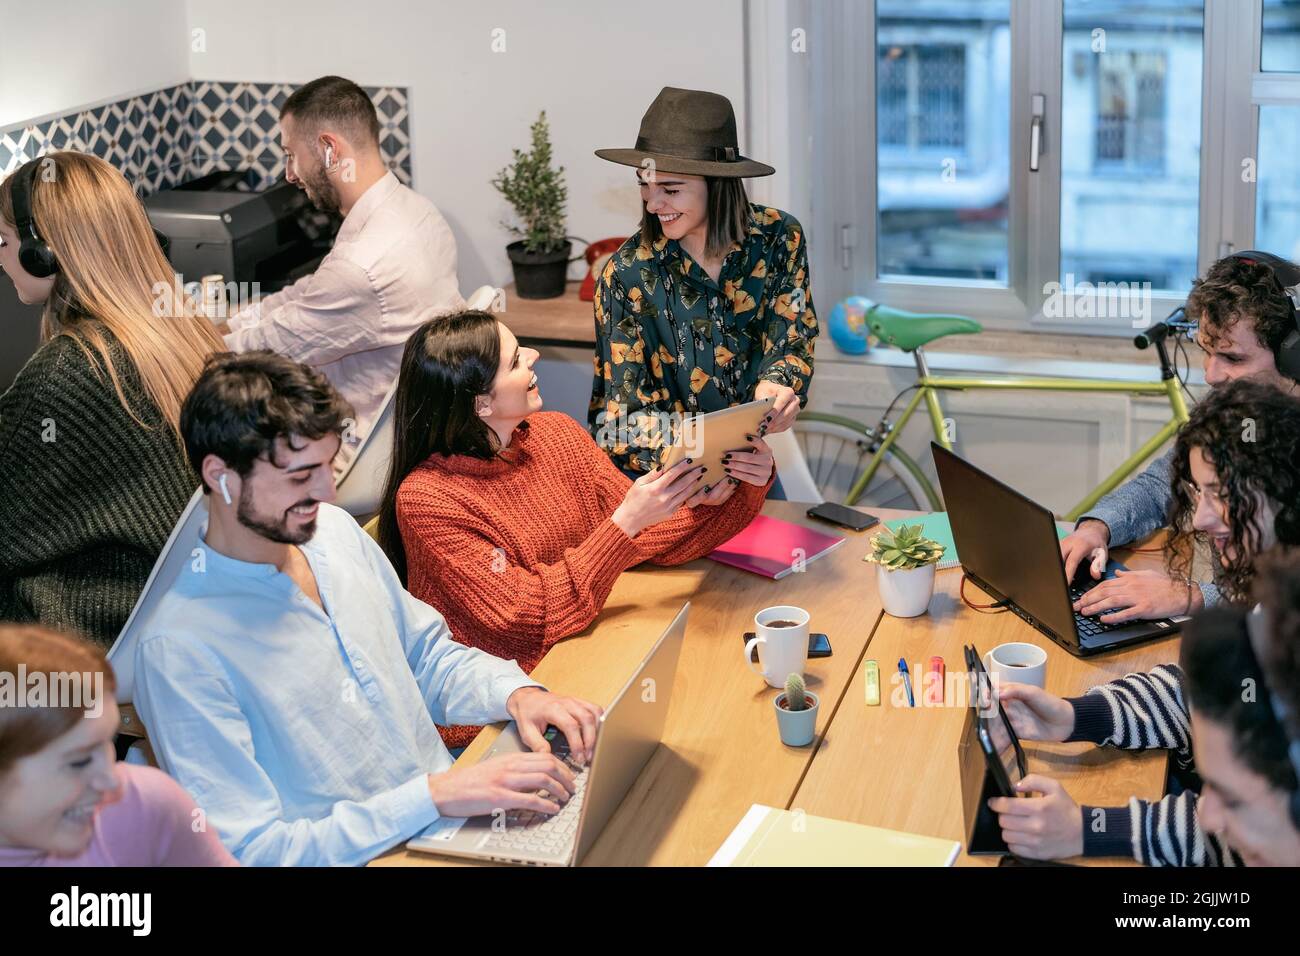 Junge Menschen in Co-Working kreativen Raum - Jugend Millennial Generation und Business-Technologie-Konzept Stockfoto